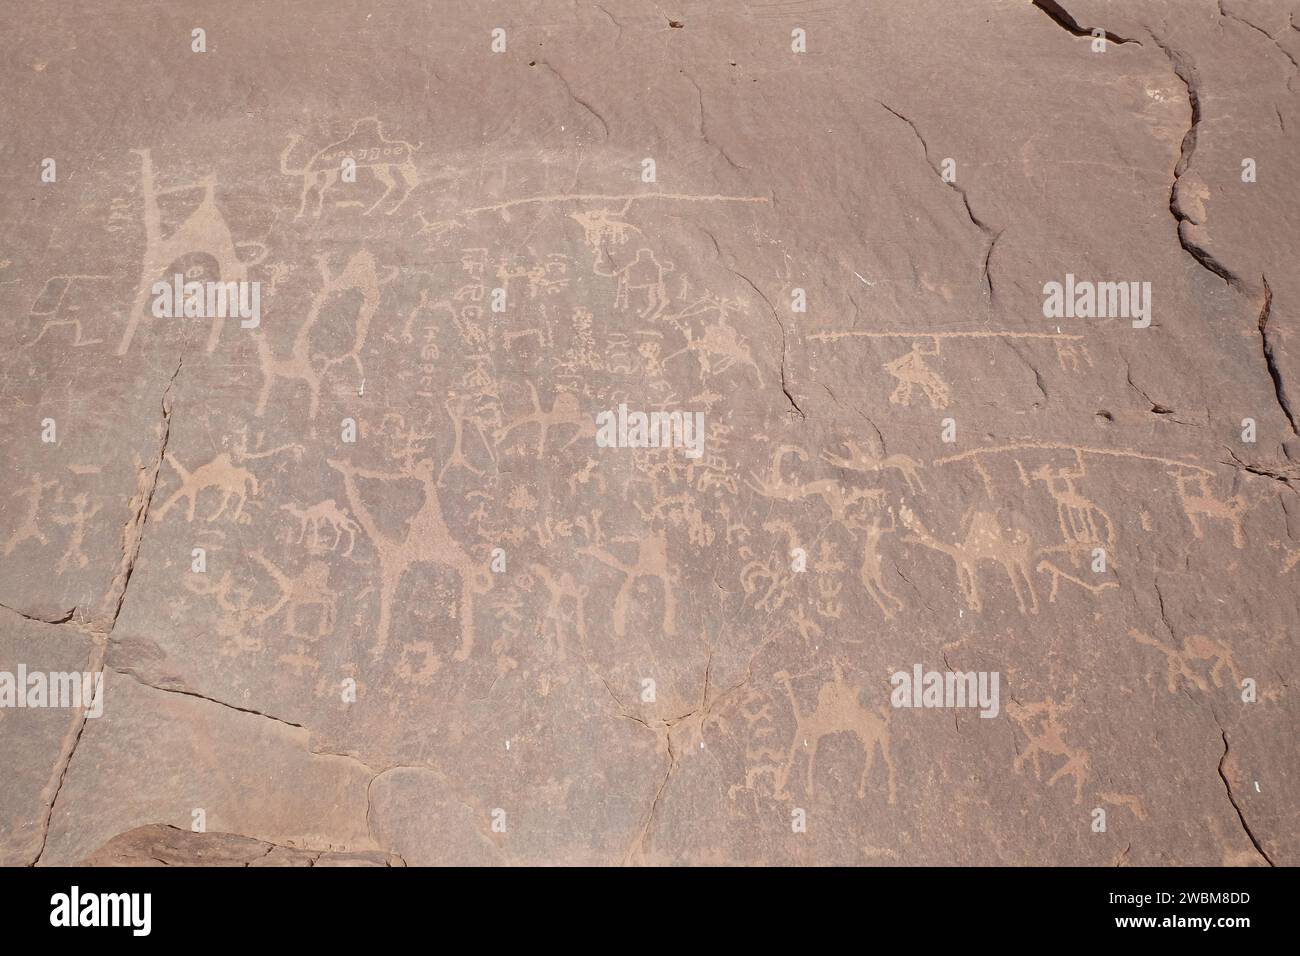 Wadi Rum, Jordanie également connu sous le nom de Vallée de la Lune. Peinture de roche dans le désert de sable rouge. Banque D'Images